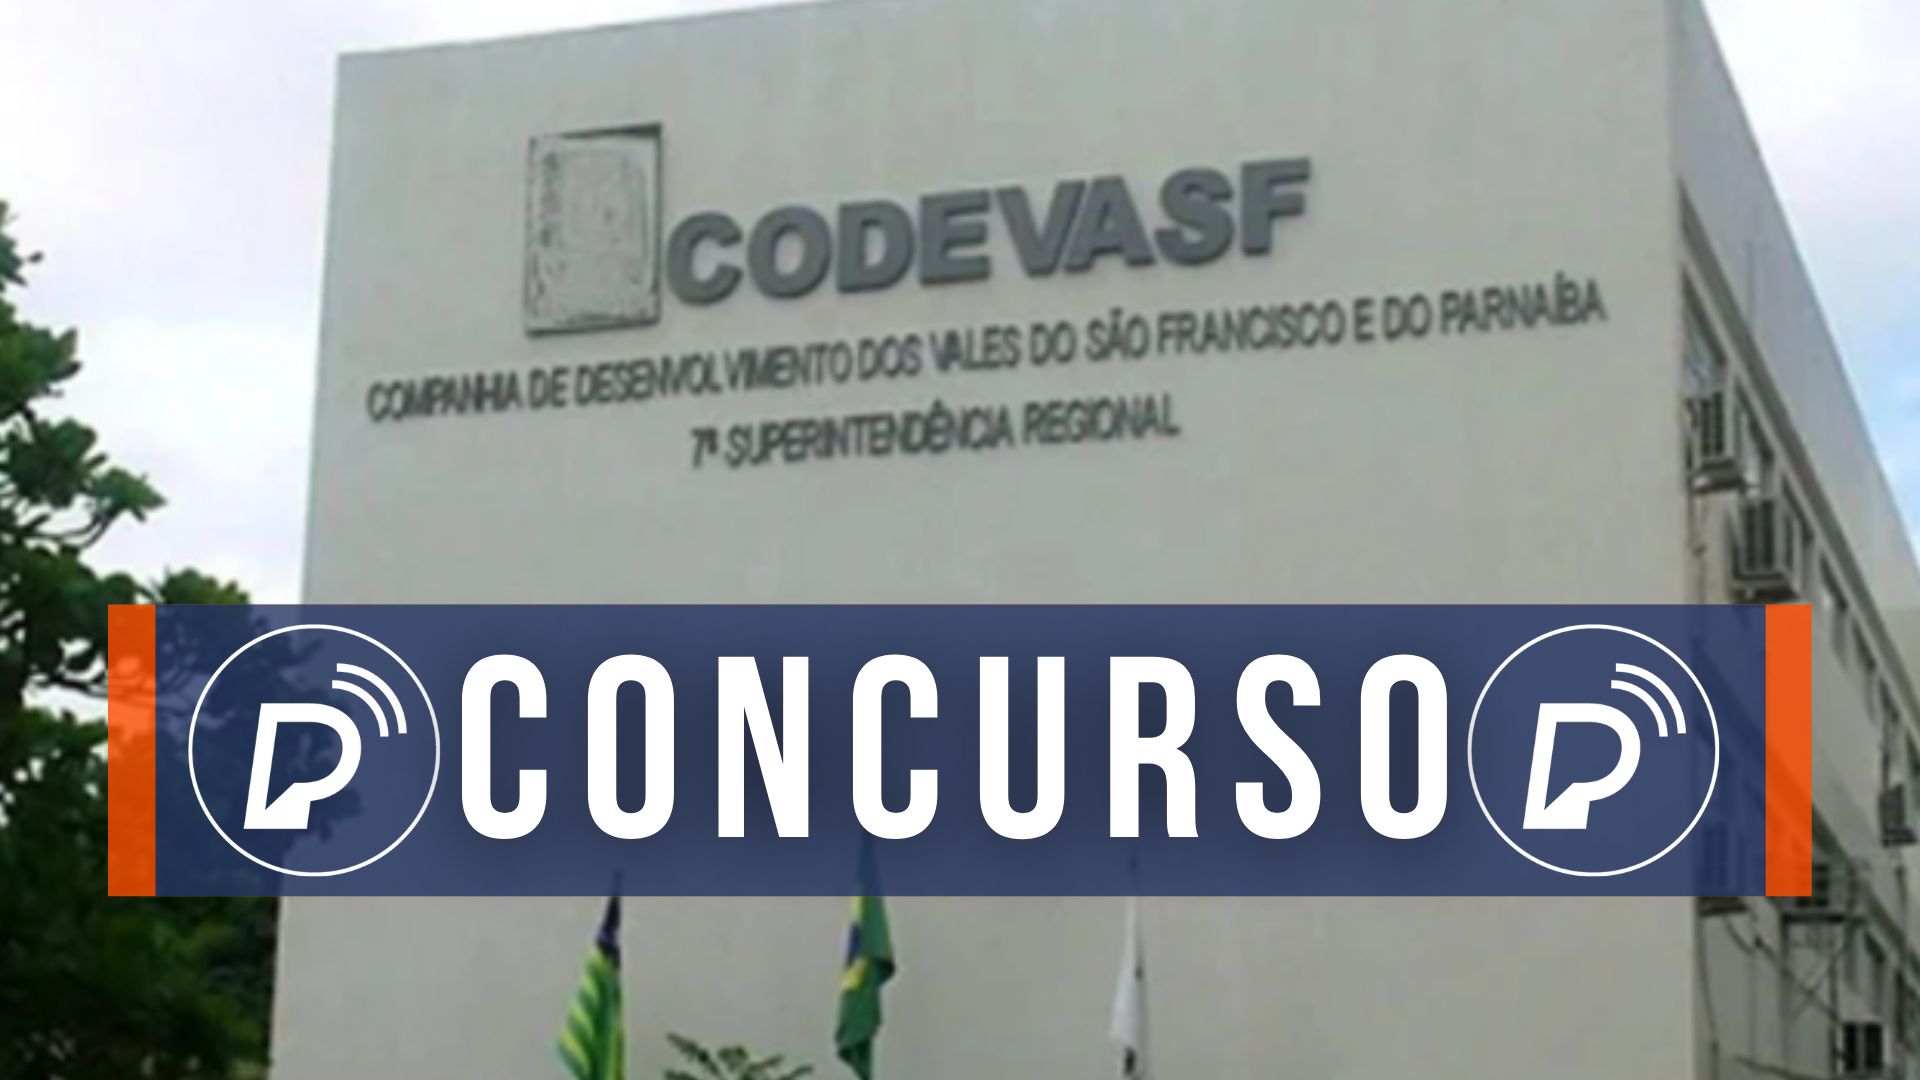 Concurso da Codevasf. Foto: Divulgação